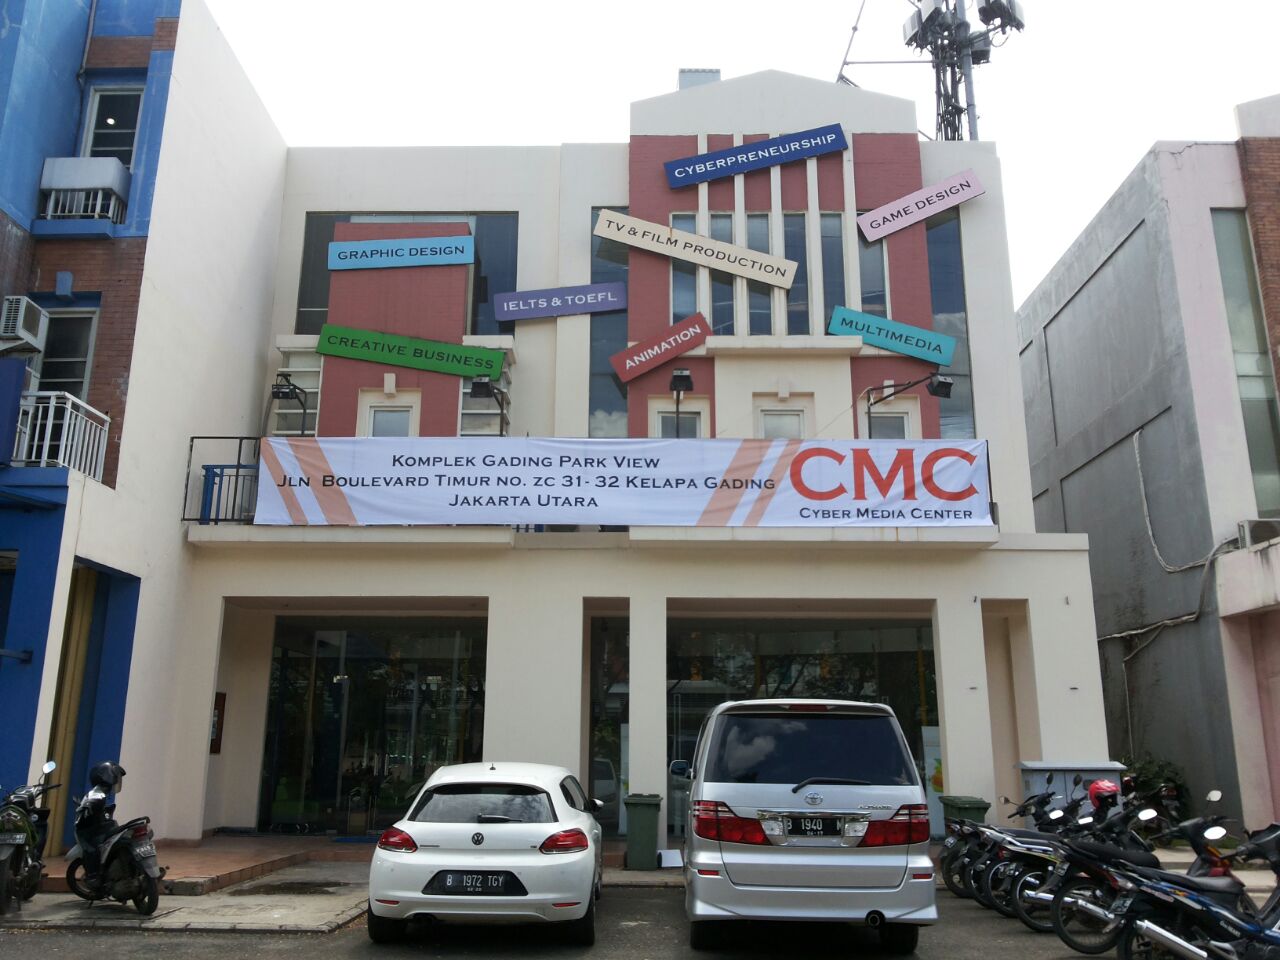 Cyber Media Centre (cmc) Photo